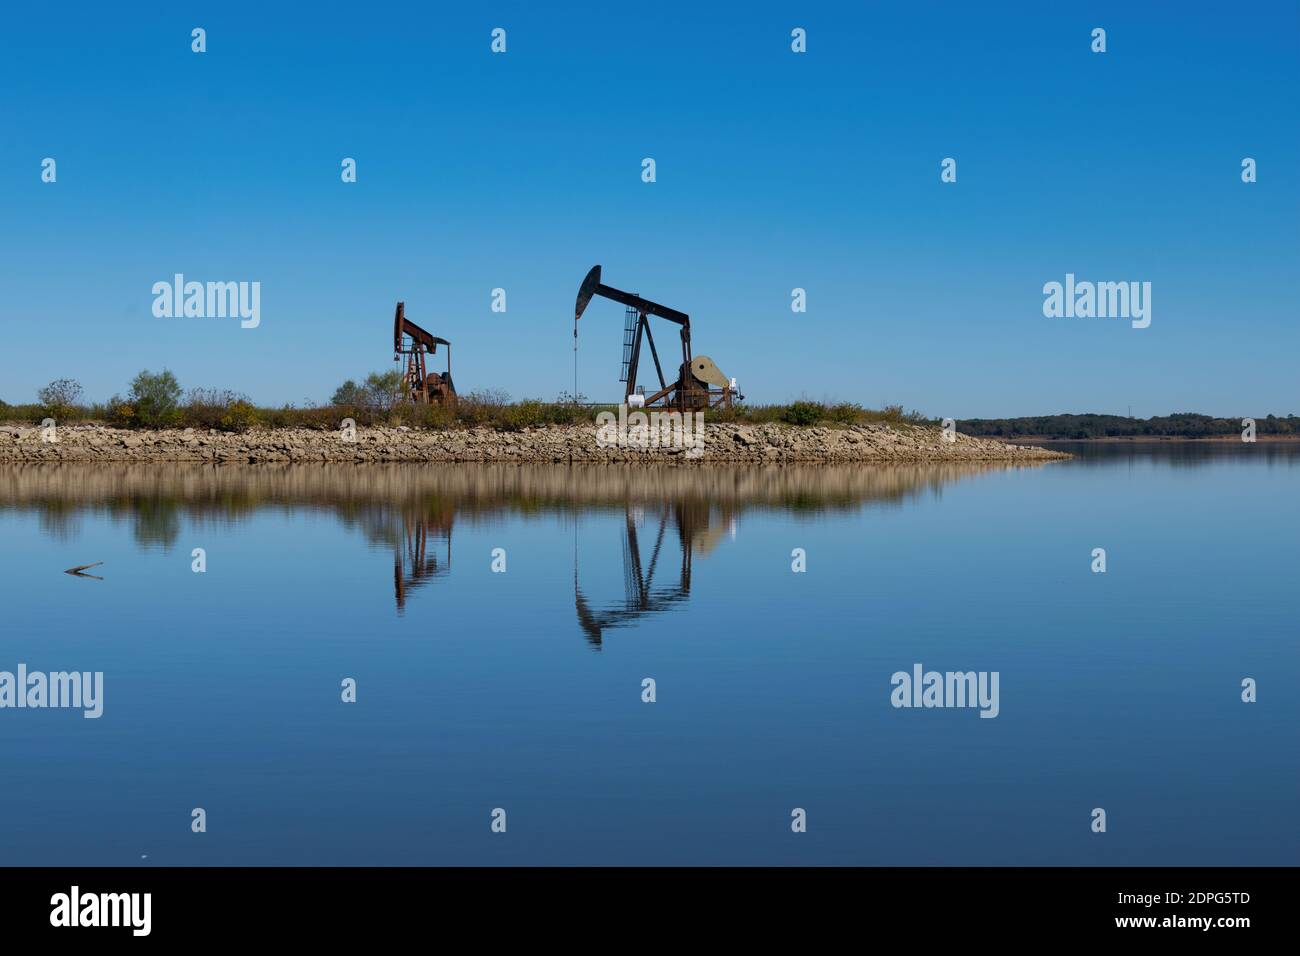 Zwei Ölfeld-Pumpenhebeböcke auf einer felsigen Halbinsel, die mit ihren Reflexen auf der ruhigen, glasigen Wasseroberfläche den See ausragt. Stockfoto